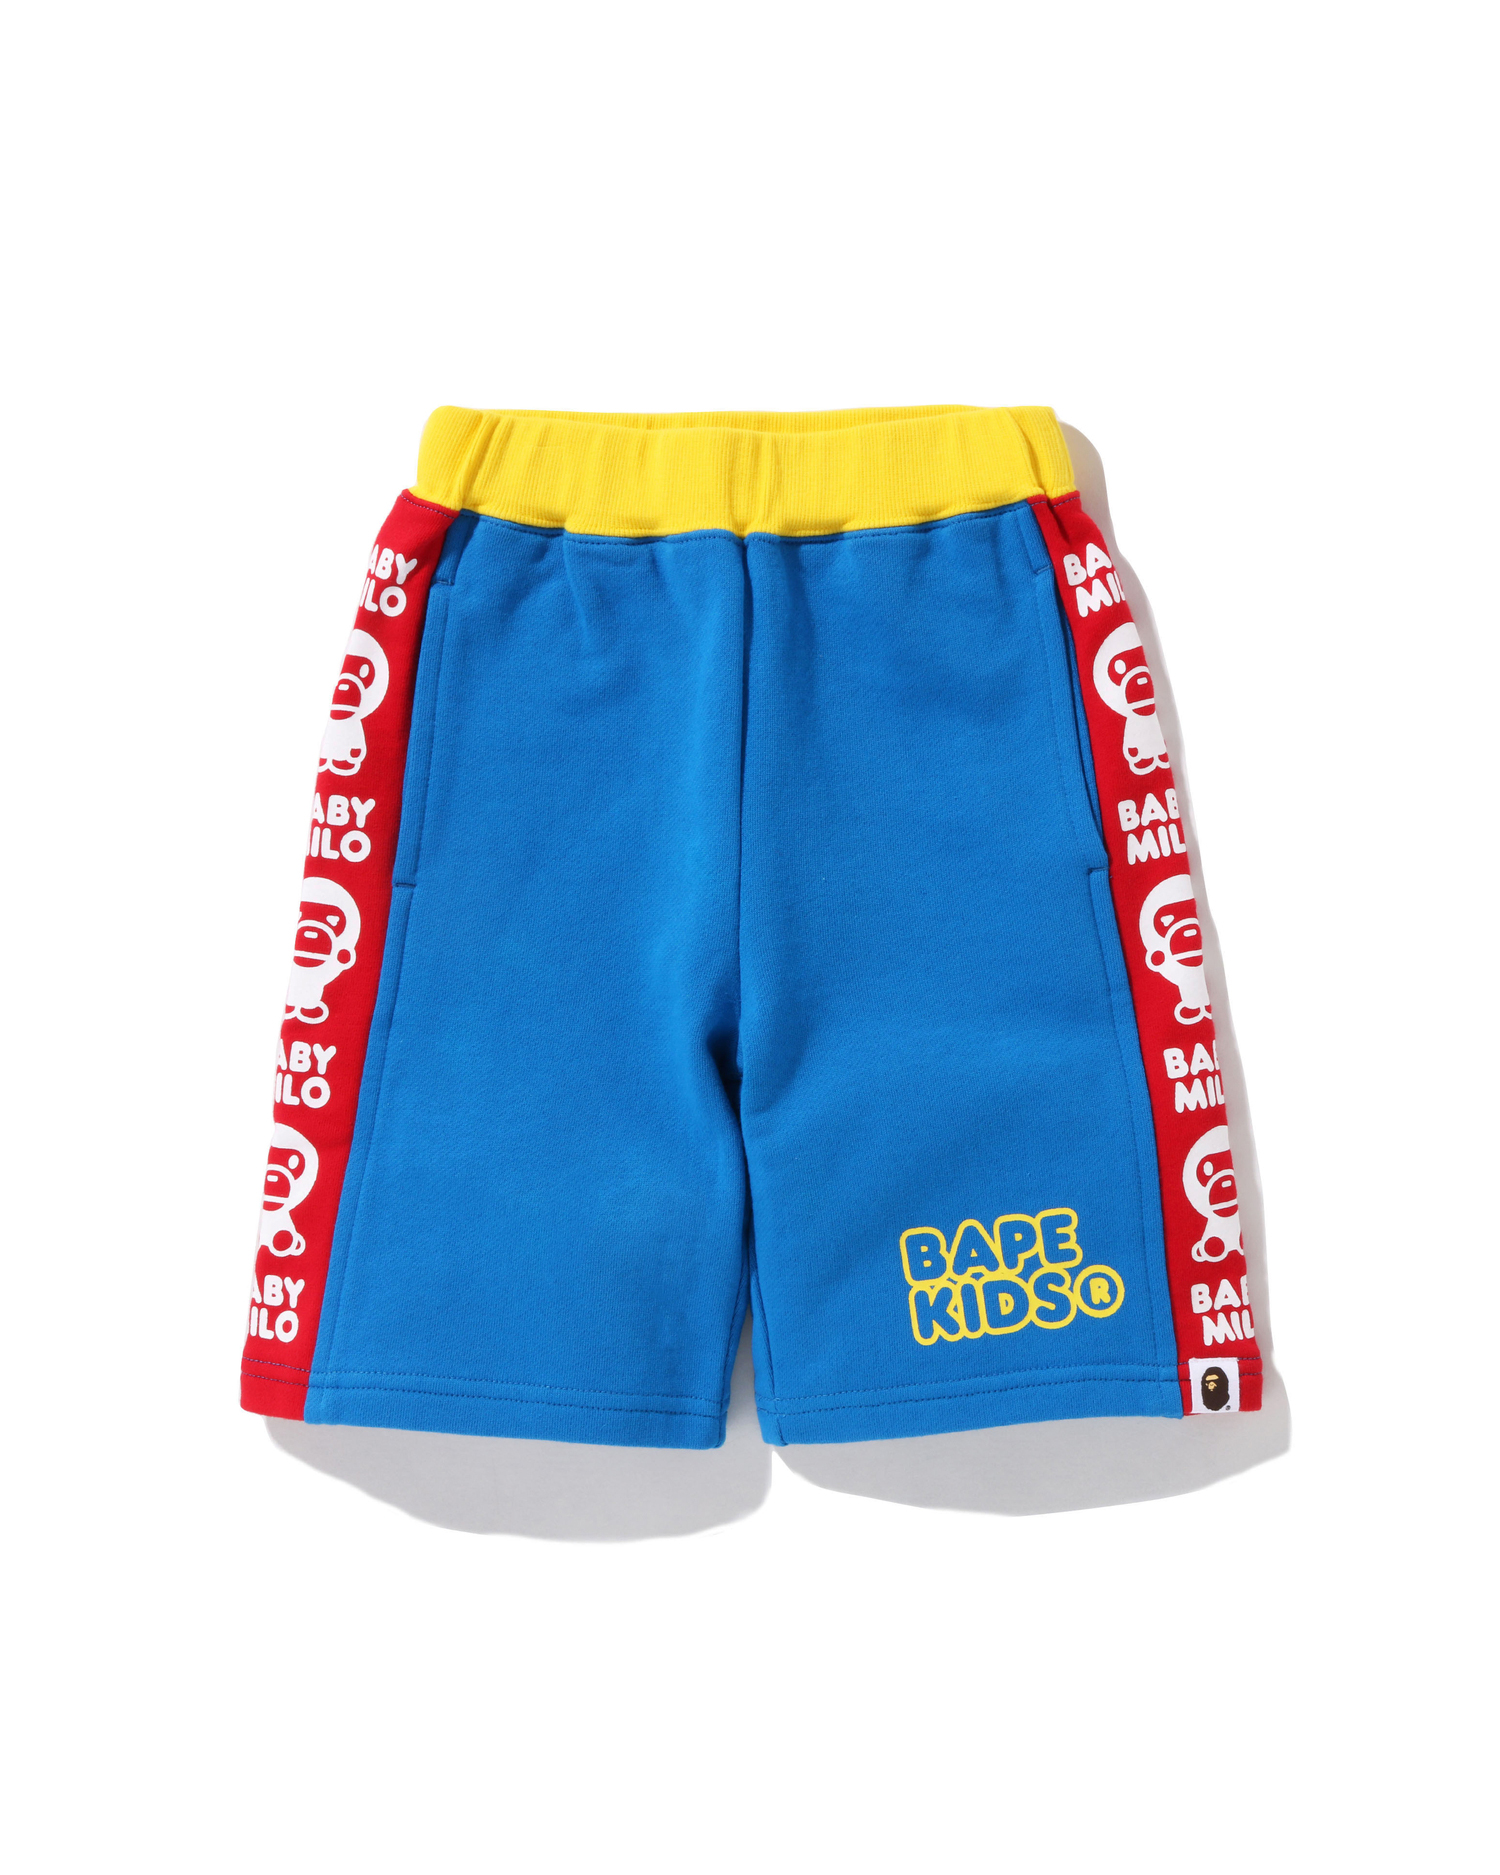 Shop Baby Milo Color Block Sweat Shorts Online | BAPE